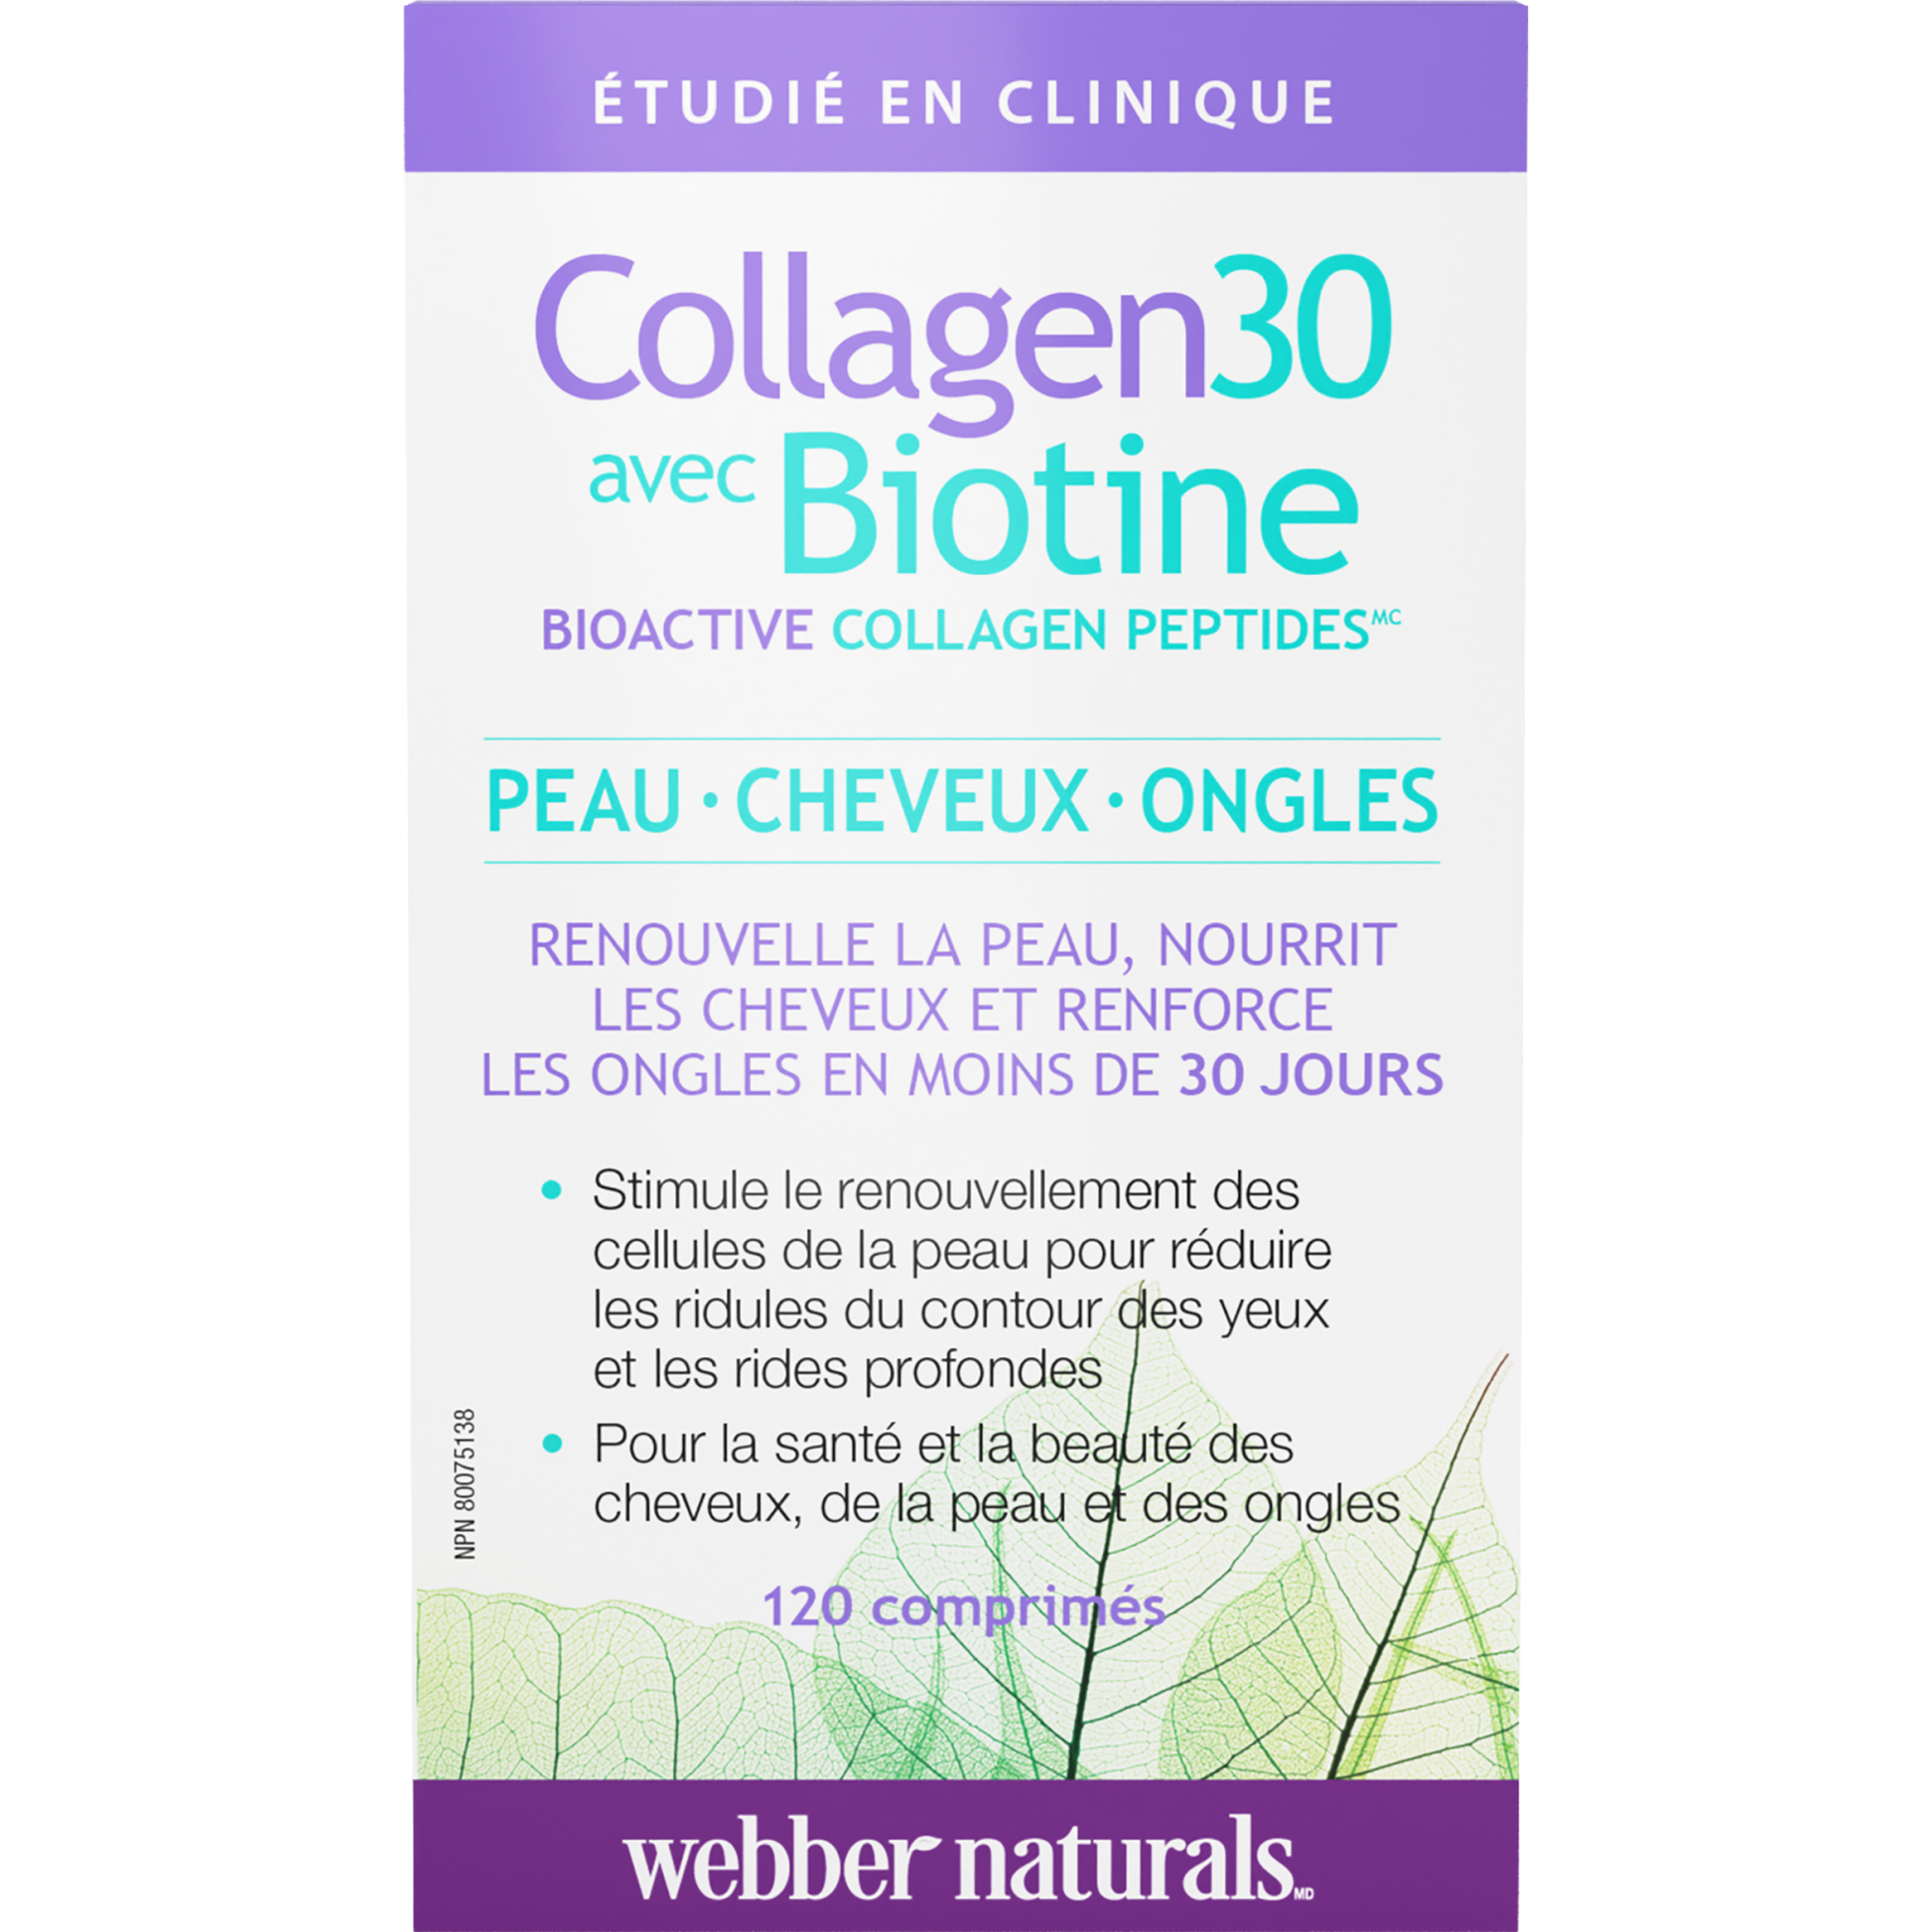 Collagen30 avec Biotine Bioactive Collagen Peptides for Webber Naturals|v|hi-res|WN3668